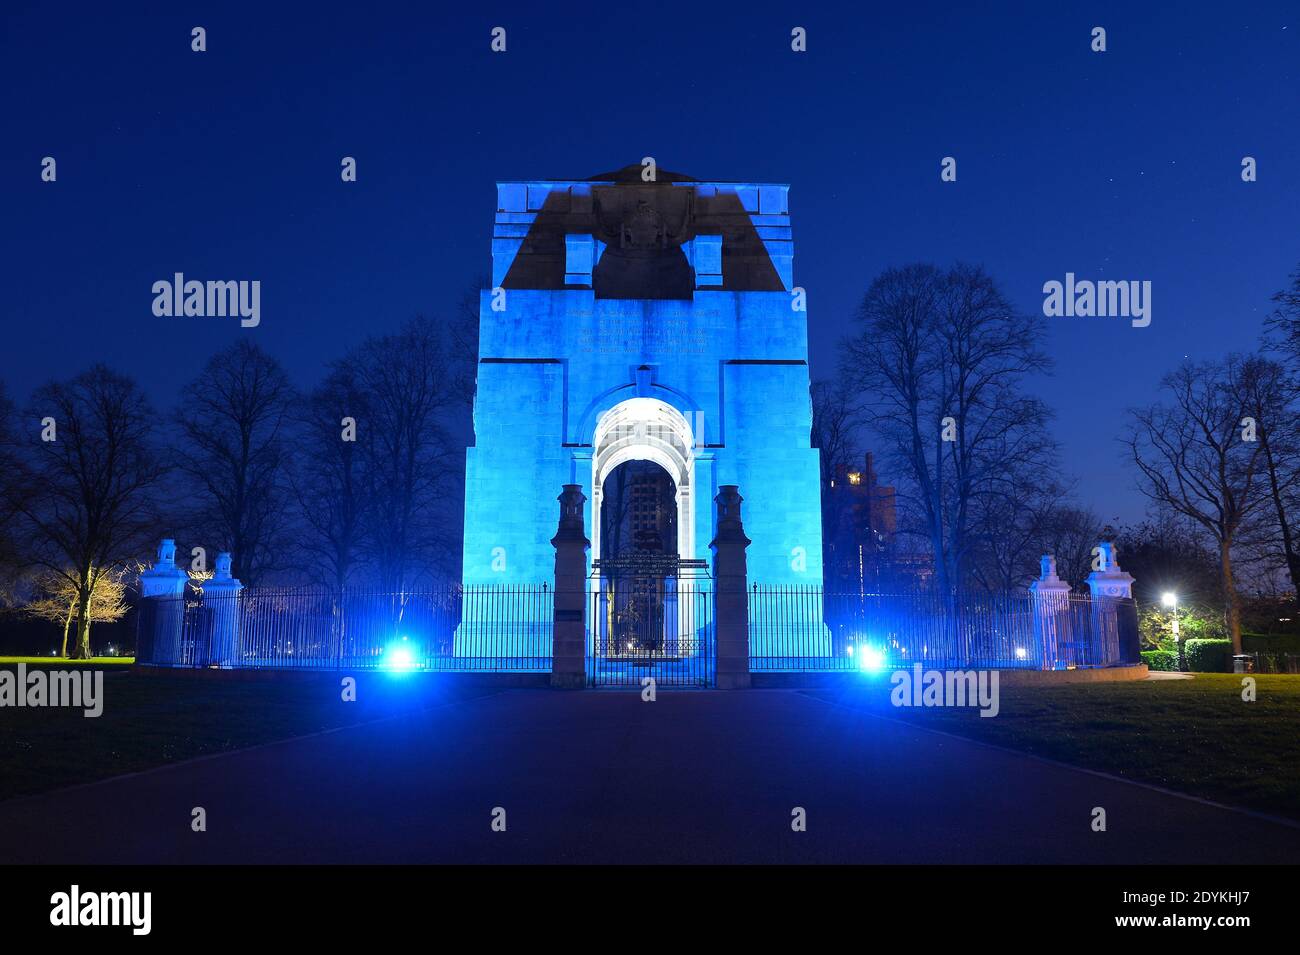 Le War Memorial de Victoria Park à Leicester est illuminé Avec une lumière bleue pour rendre hommage aux travailleurs du NHS Pendant la pandémie du coronavirus Banque D'Images